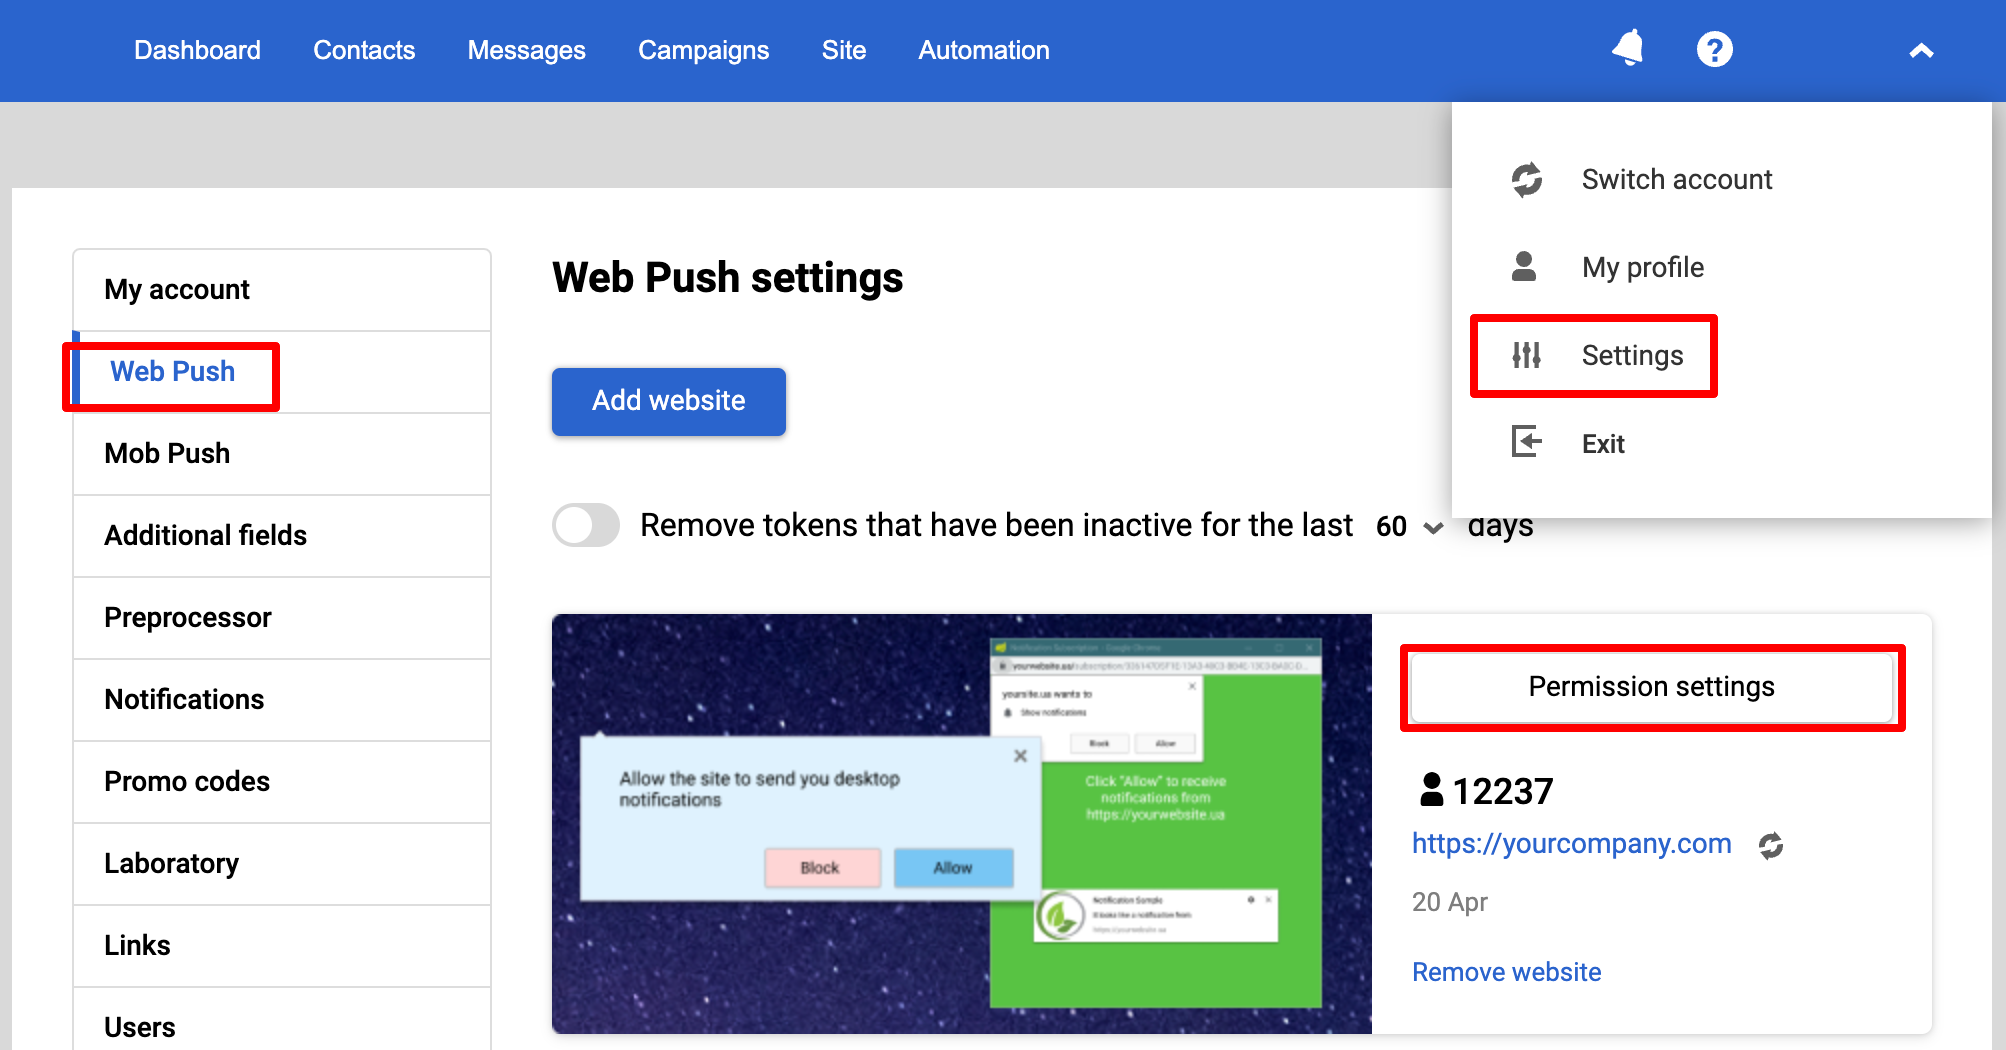 Web Push settings